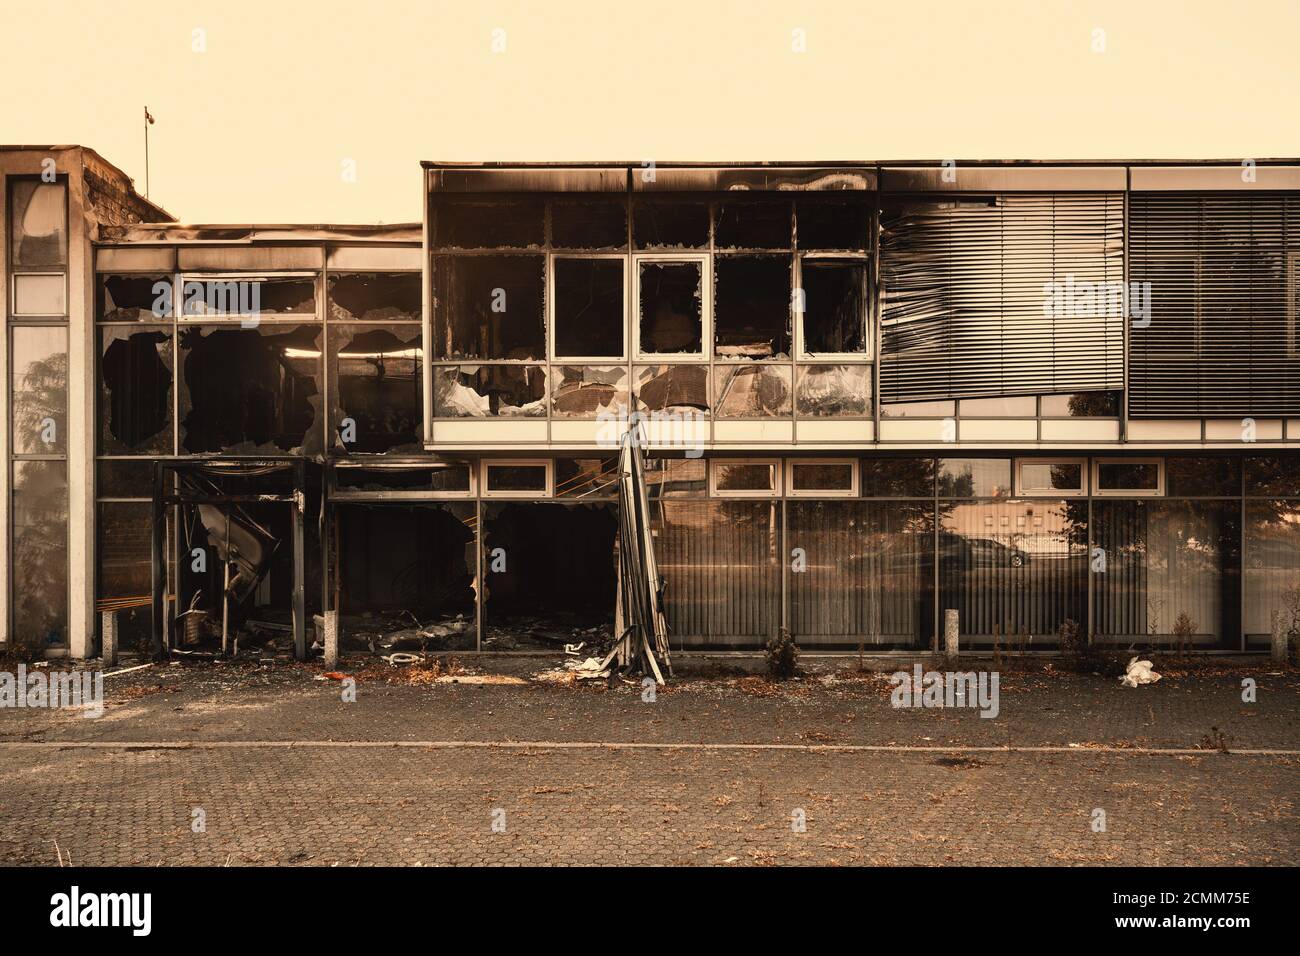 L'avant brûlé d'une rangée de magasins avec des fenêtres cassées et des traces de fumée. Banque D'Images